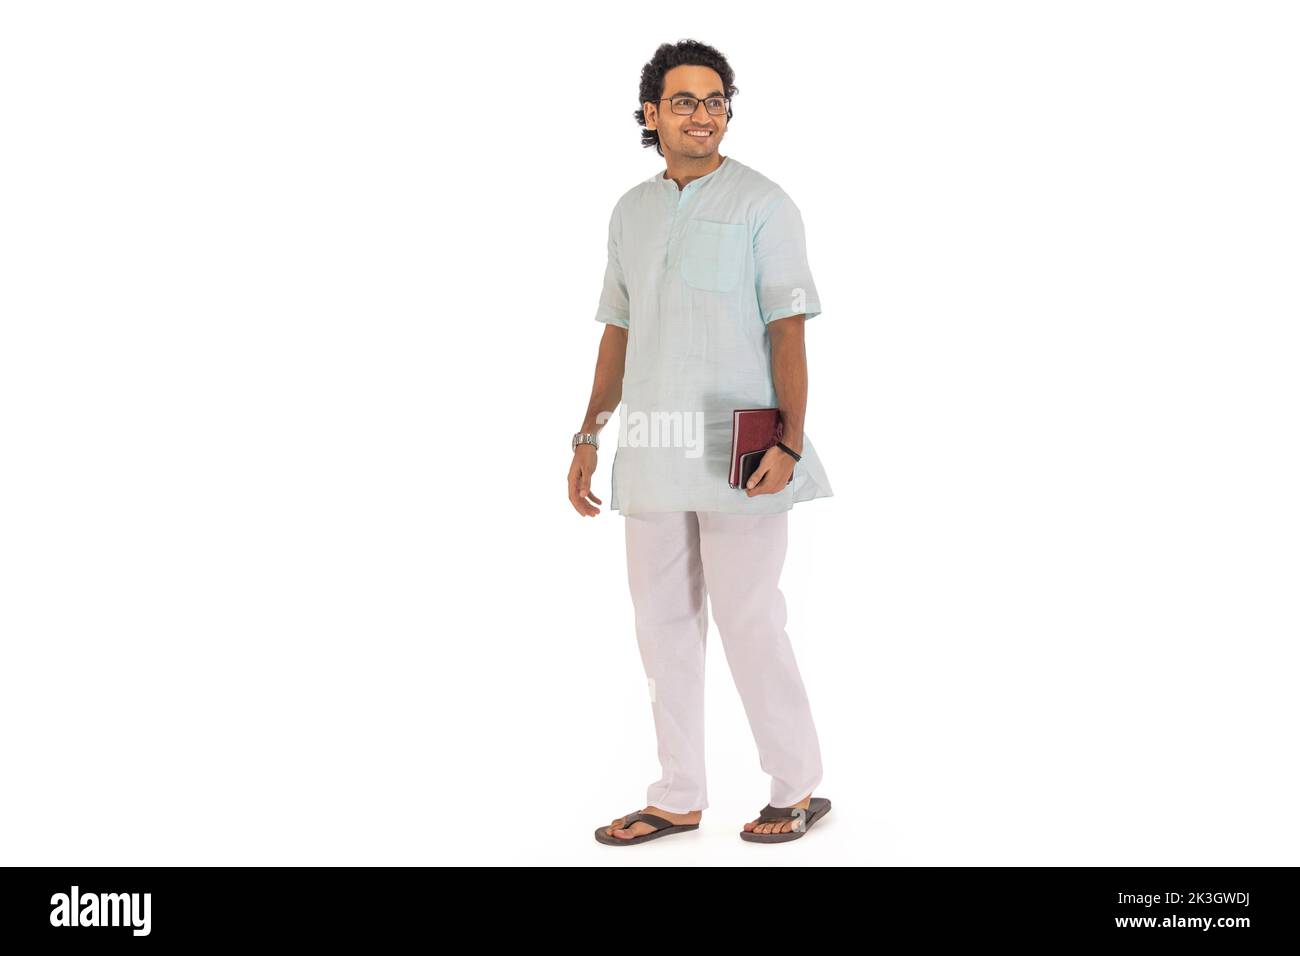 Retrato de un hombre bengalí sobre fondo blanco Foto de stock